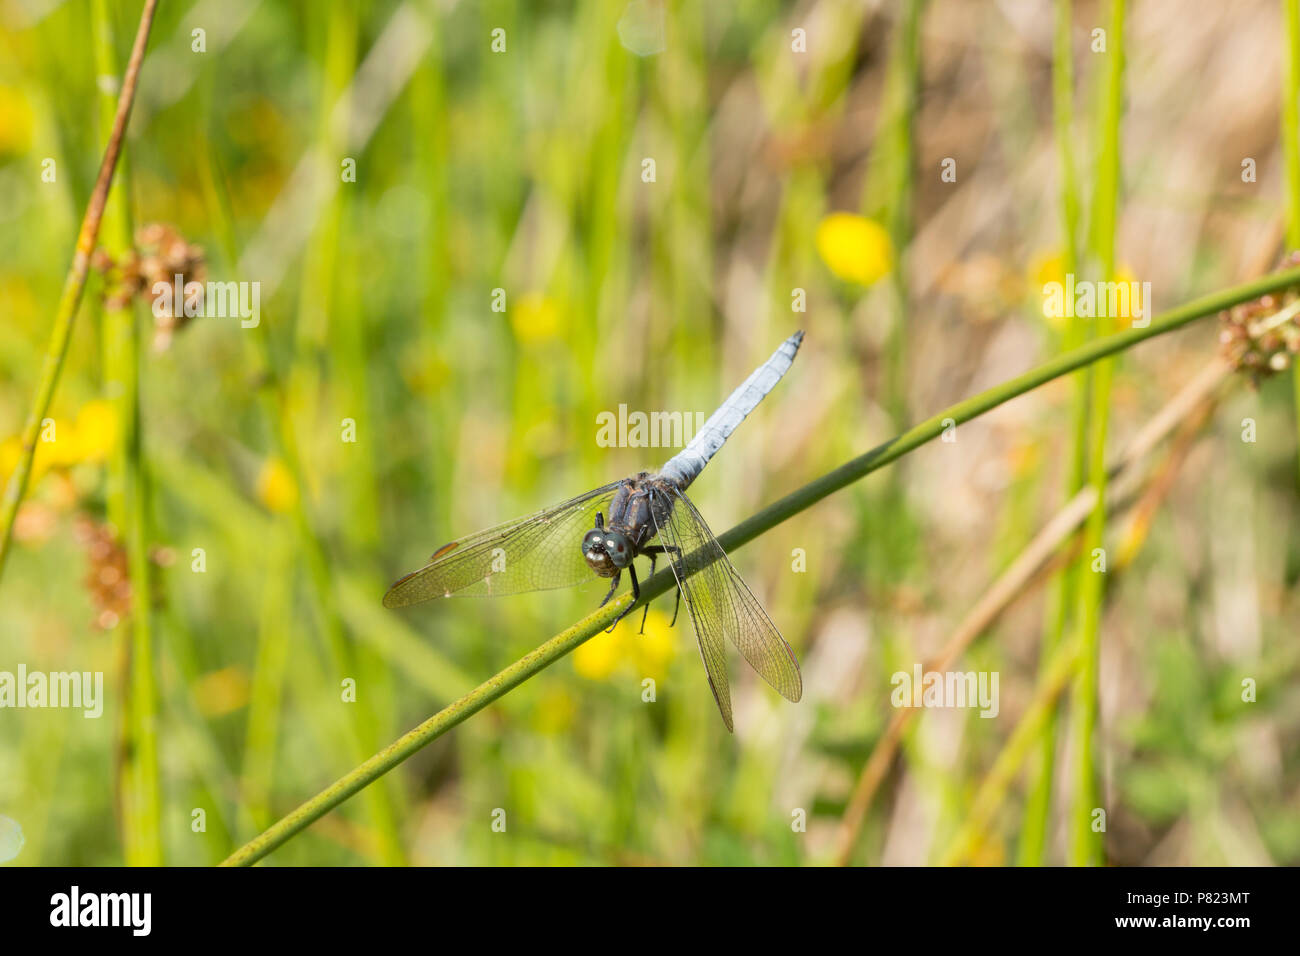 Un maschio keeled skimmer dragonfly, Othetrum coerulescens, appoggiato da un flusso nella nuova foresta durante la canicola del Regno Unito del 2018. Il keeled favou skimmer Foto Stock